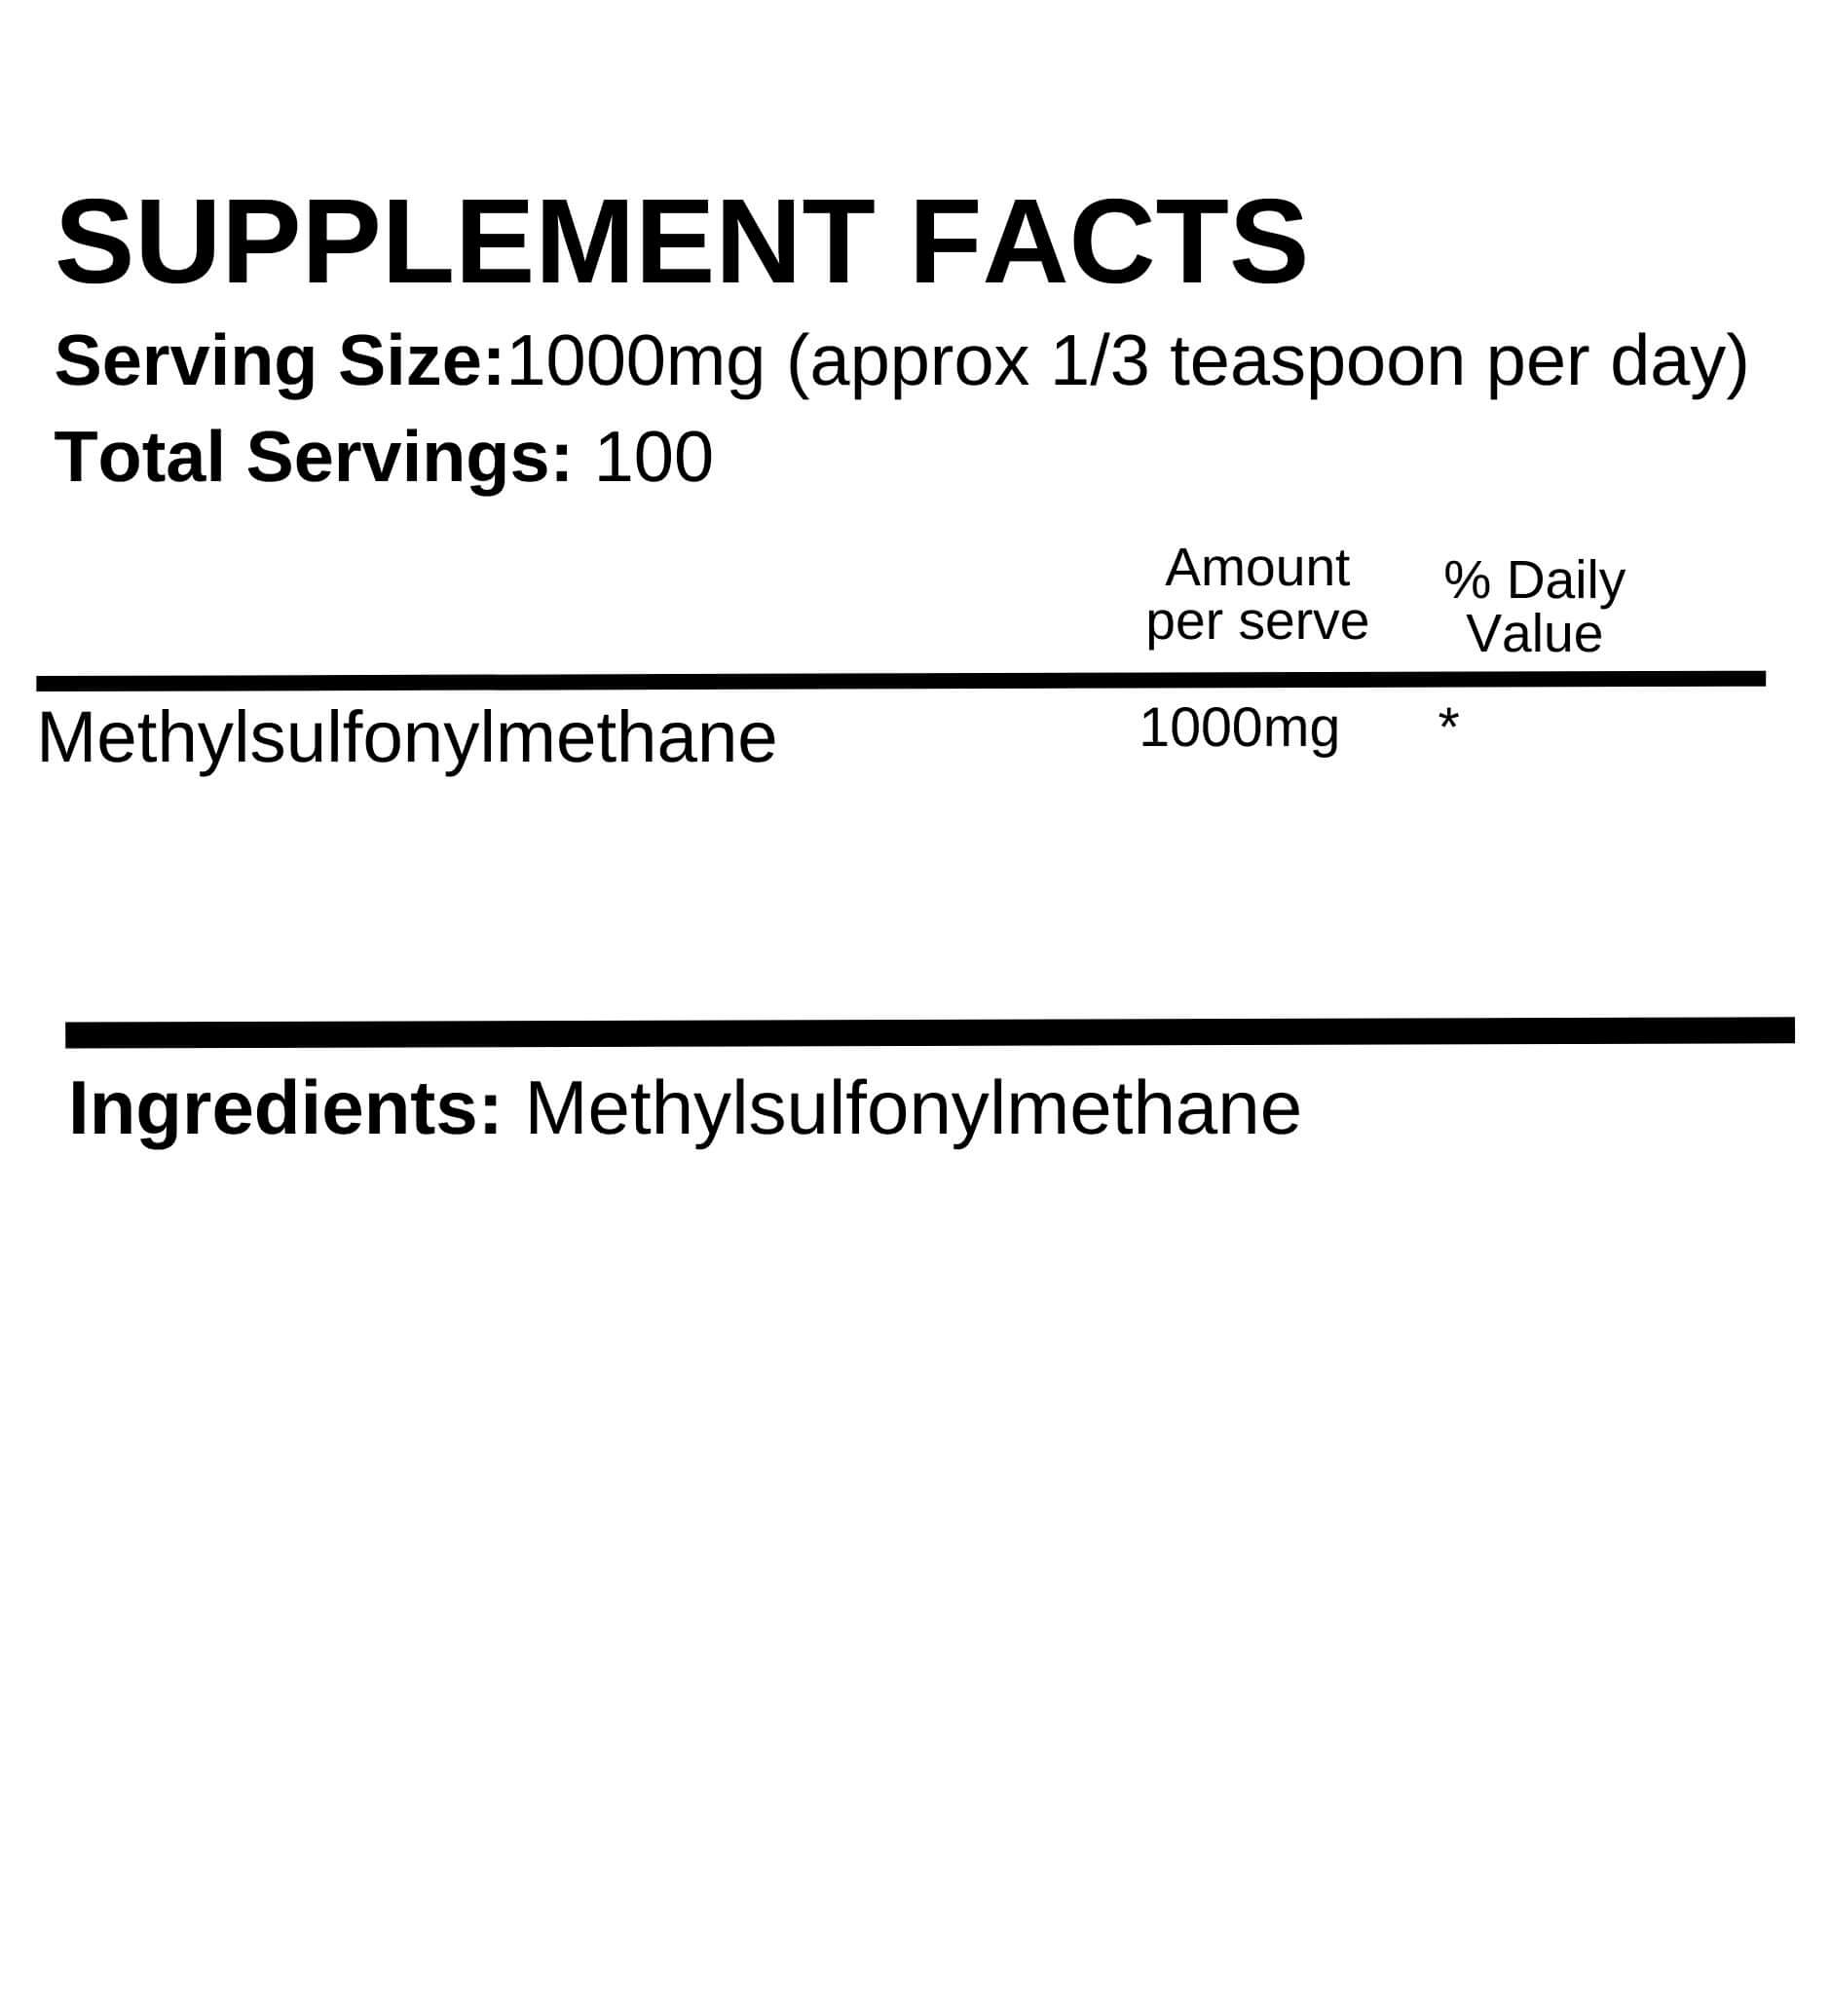 MSM (Methylsulfonylmethane)  powder